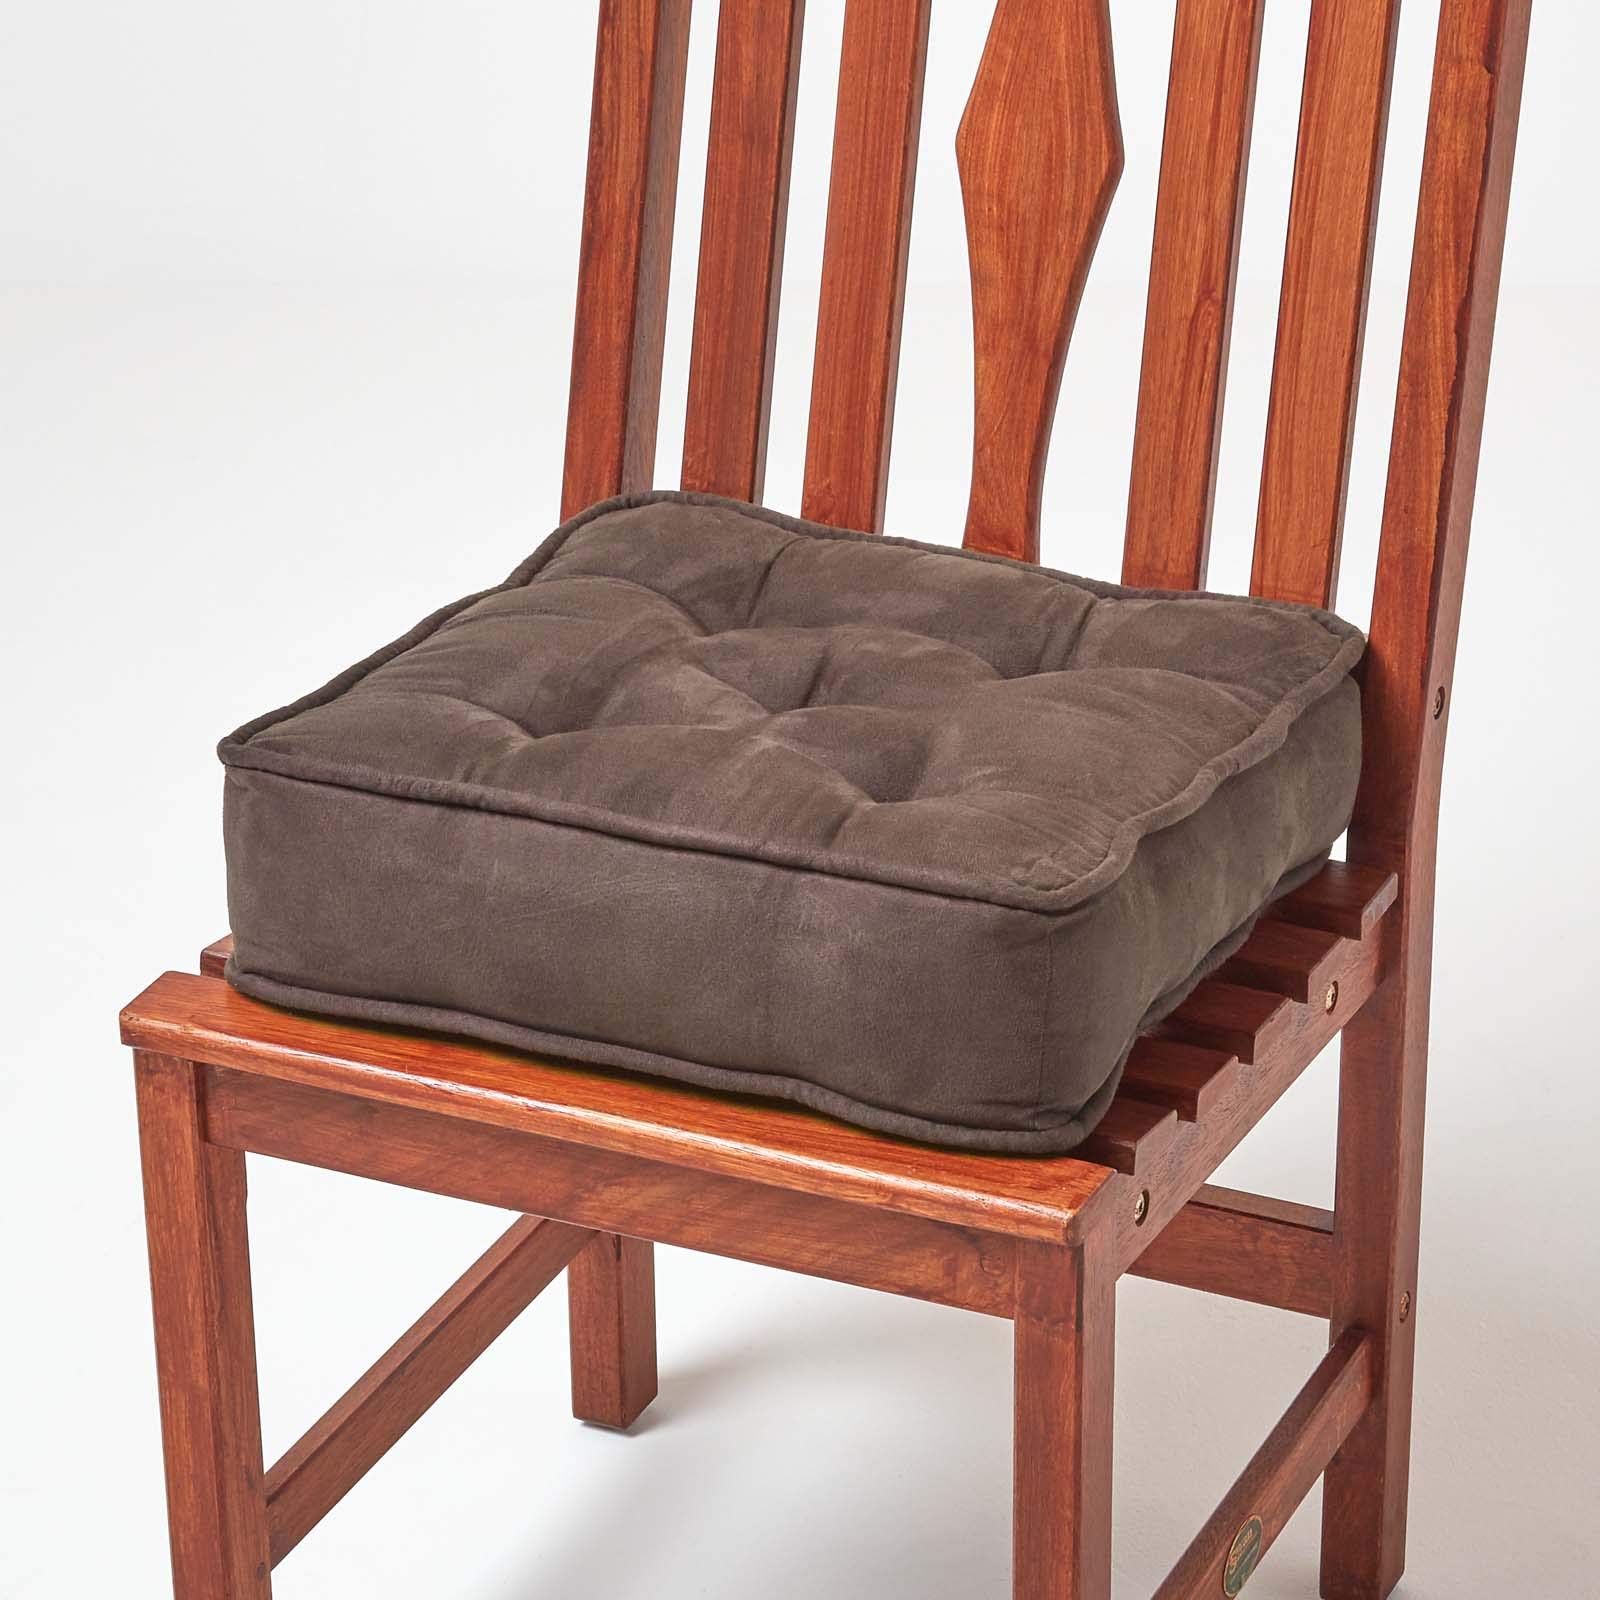 Homescapes Dickes Sitzkissen braun, Stuhlkissen 40x40 cm mit Bändern, Sitzerhöhung 10 cm, Matratzenkissen mit Velours-Bezug